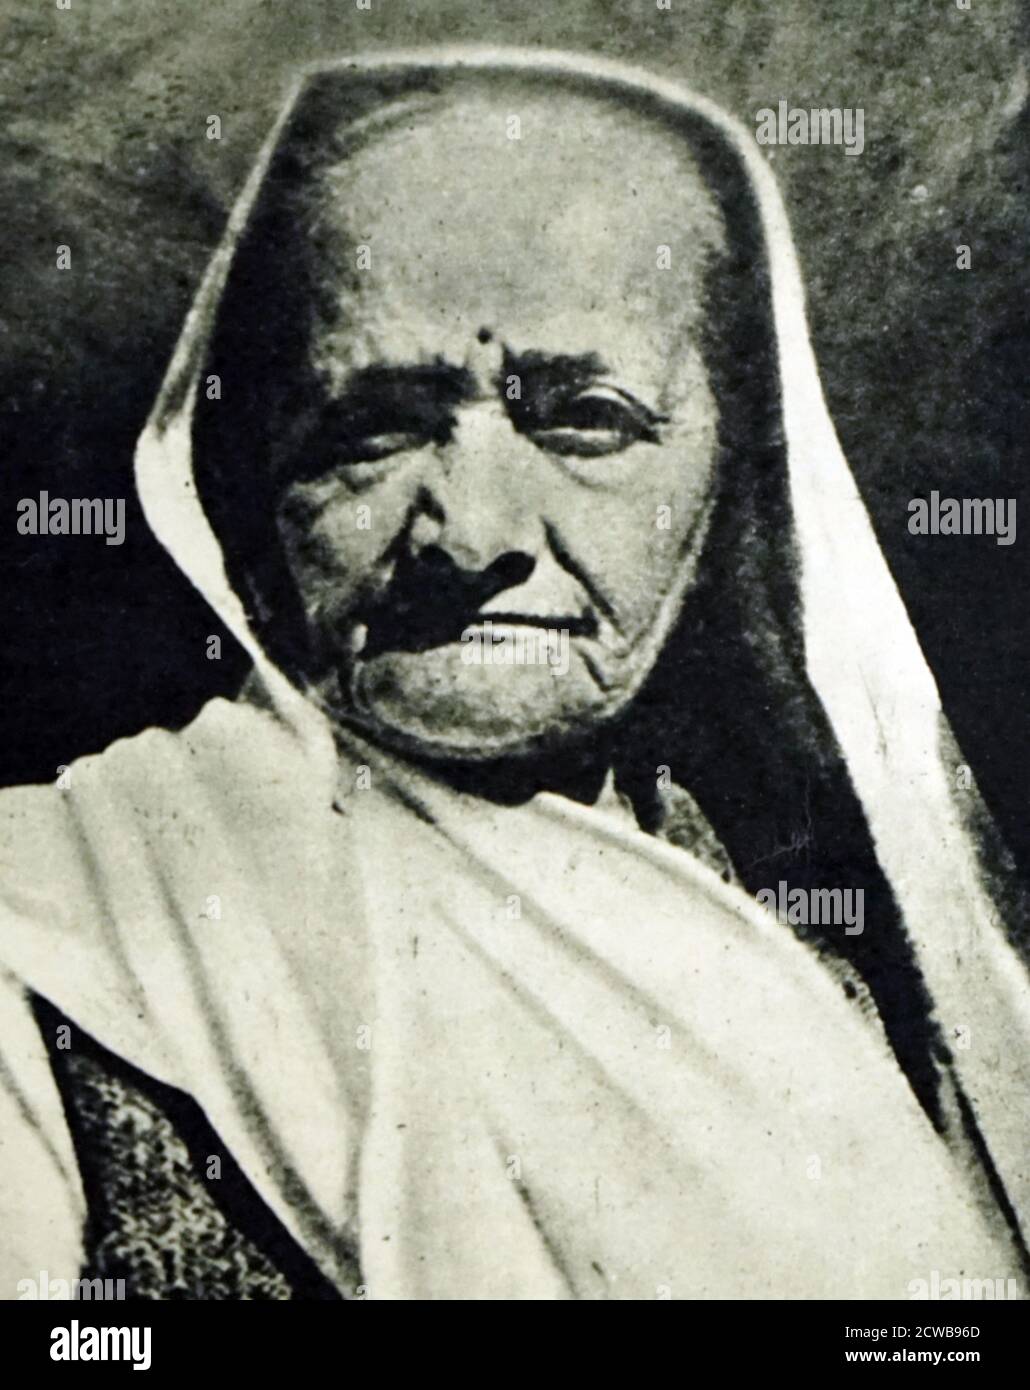 Fotografía de Kasturba Gandhi. Kasturbai 'Kasturba' Mohandas Gandhi (1869-1944) activista político indio y esposa de Mahatma Gandhi Foto de stock